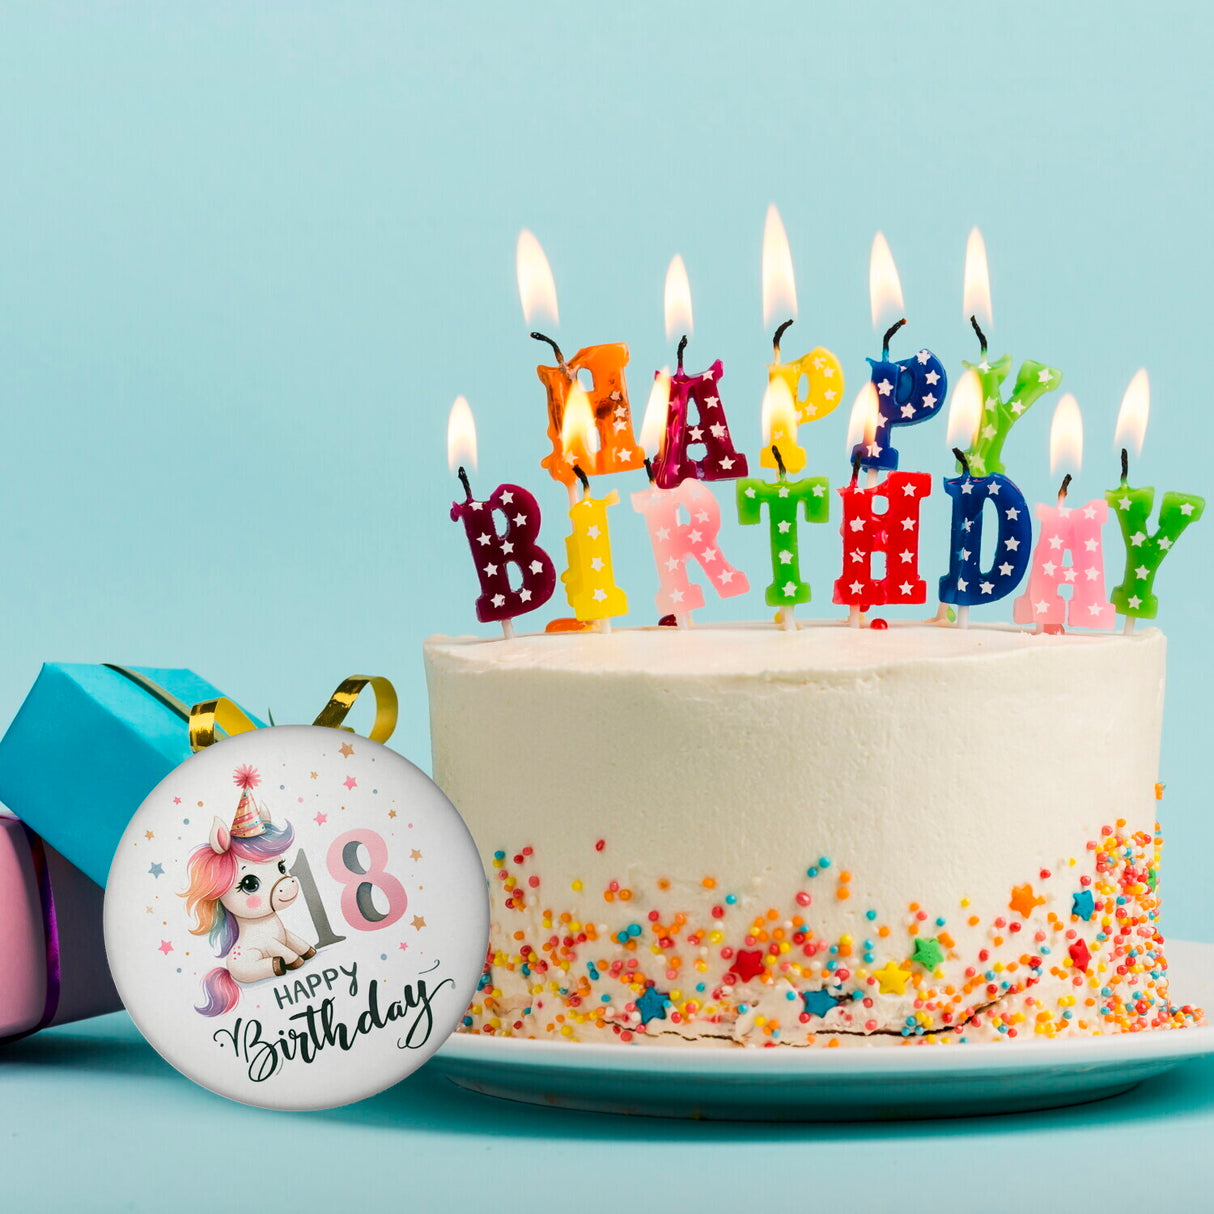 18. Geburtstag mit niedlichem Pferd Magnet rund mit Spruch Happy Birthday 18